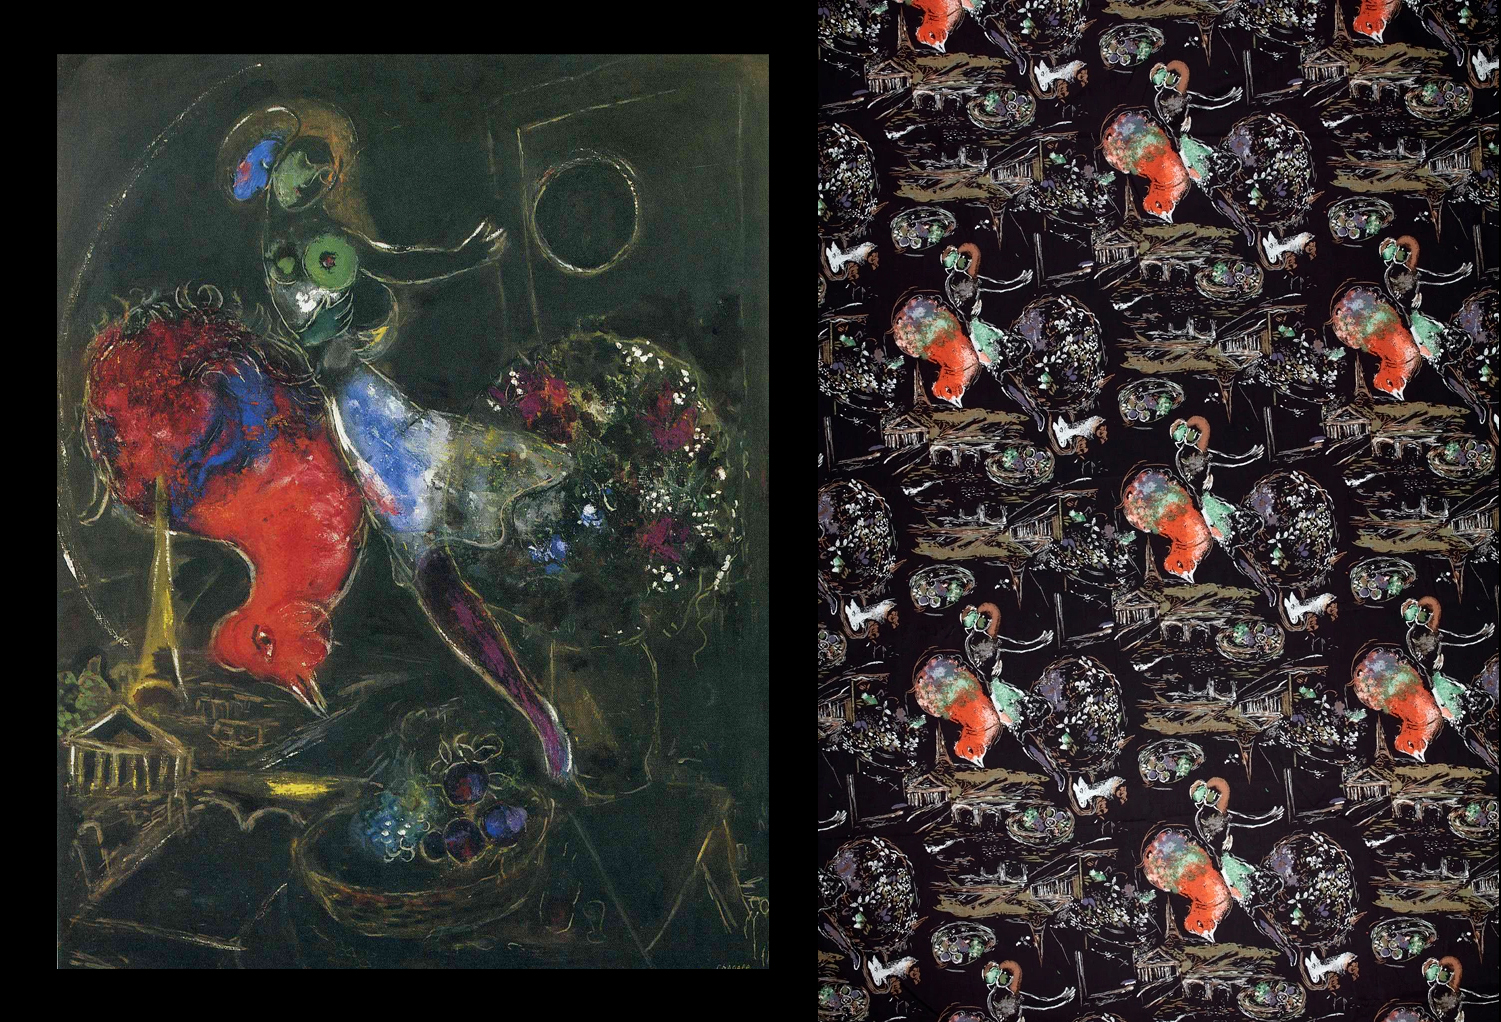 Картина Марка Шагала  «Ночь» (1953) и ткань «Les Amoureux» («Влюбленные») 1956 года по ее мотивам / проект «Modern Masters» / Fuller Fabrics